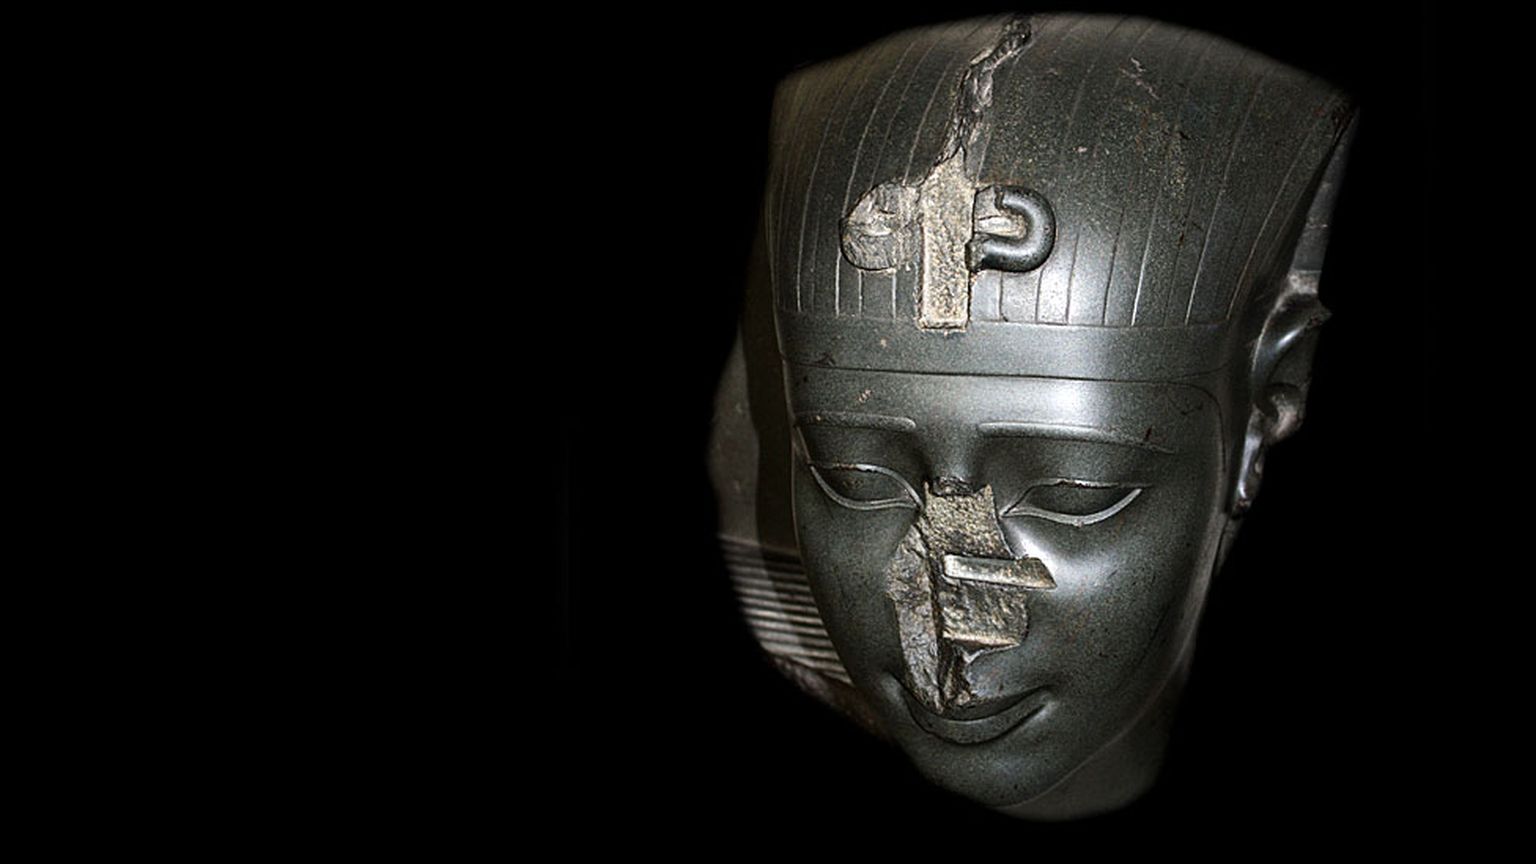 Исследования показали, что отсутствие носов у статуй, подобных этой (фараон Тридцатой династии, около 370 г. до н.э.), вовсе не случайно